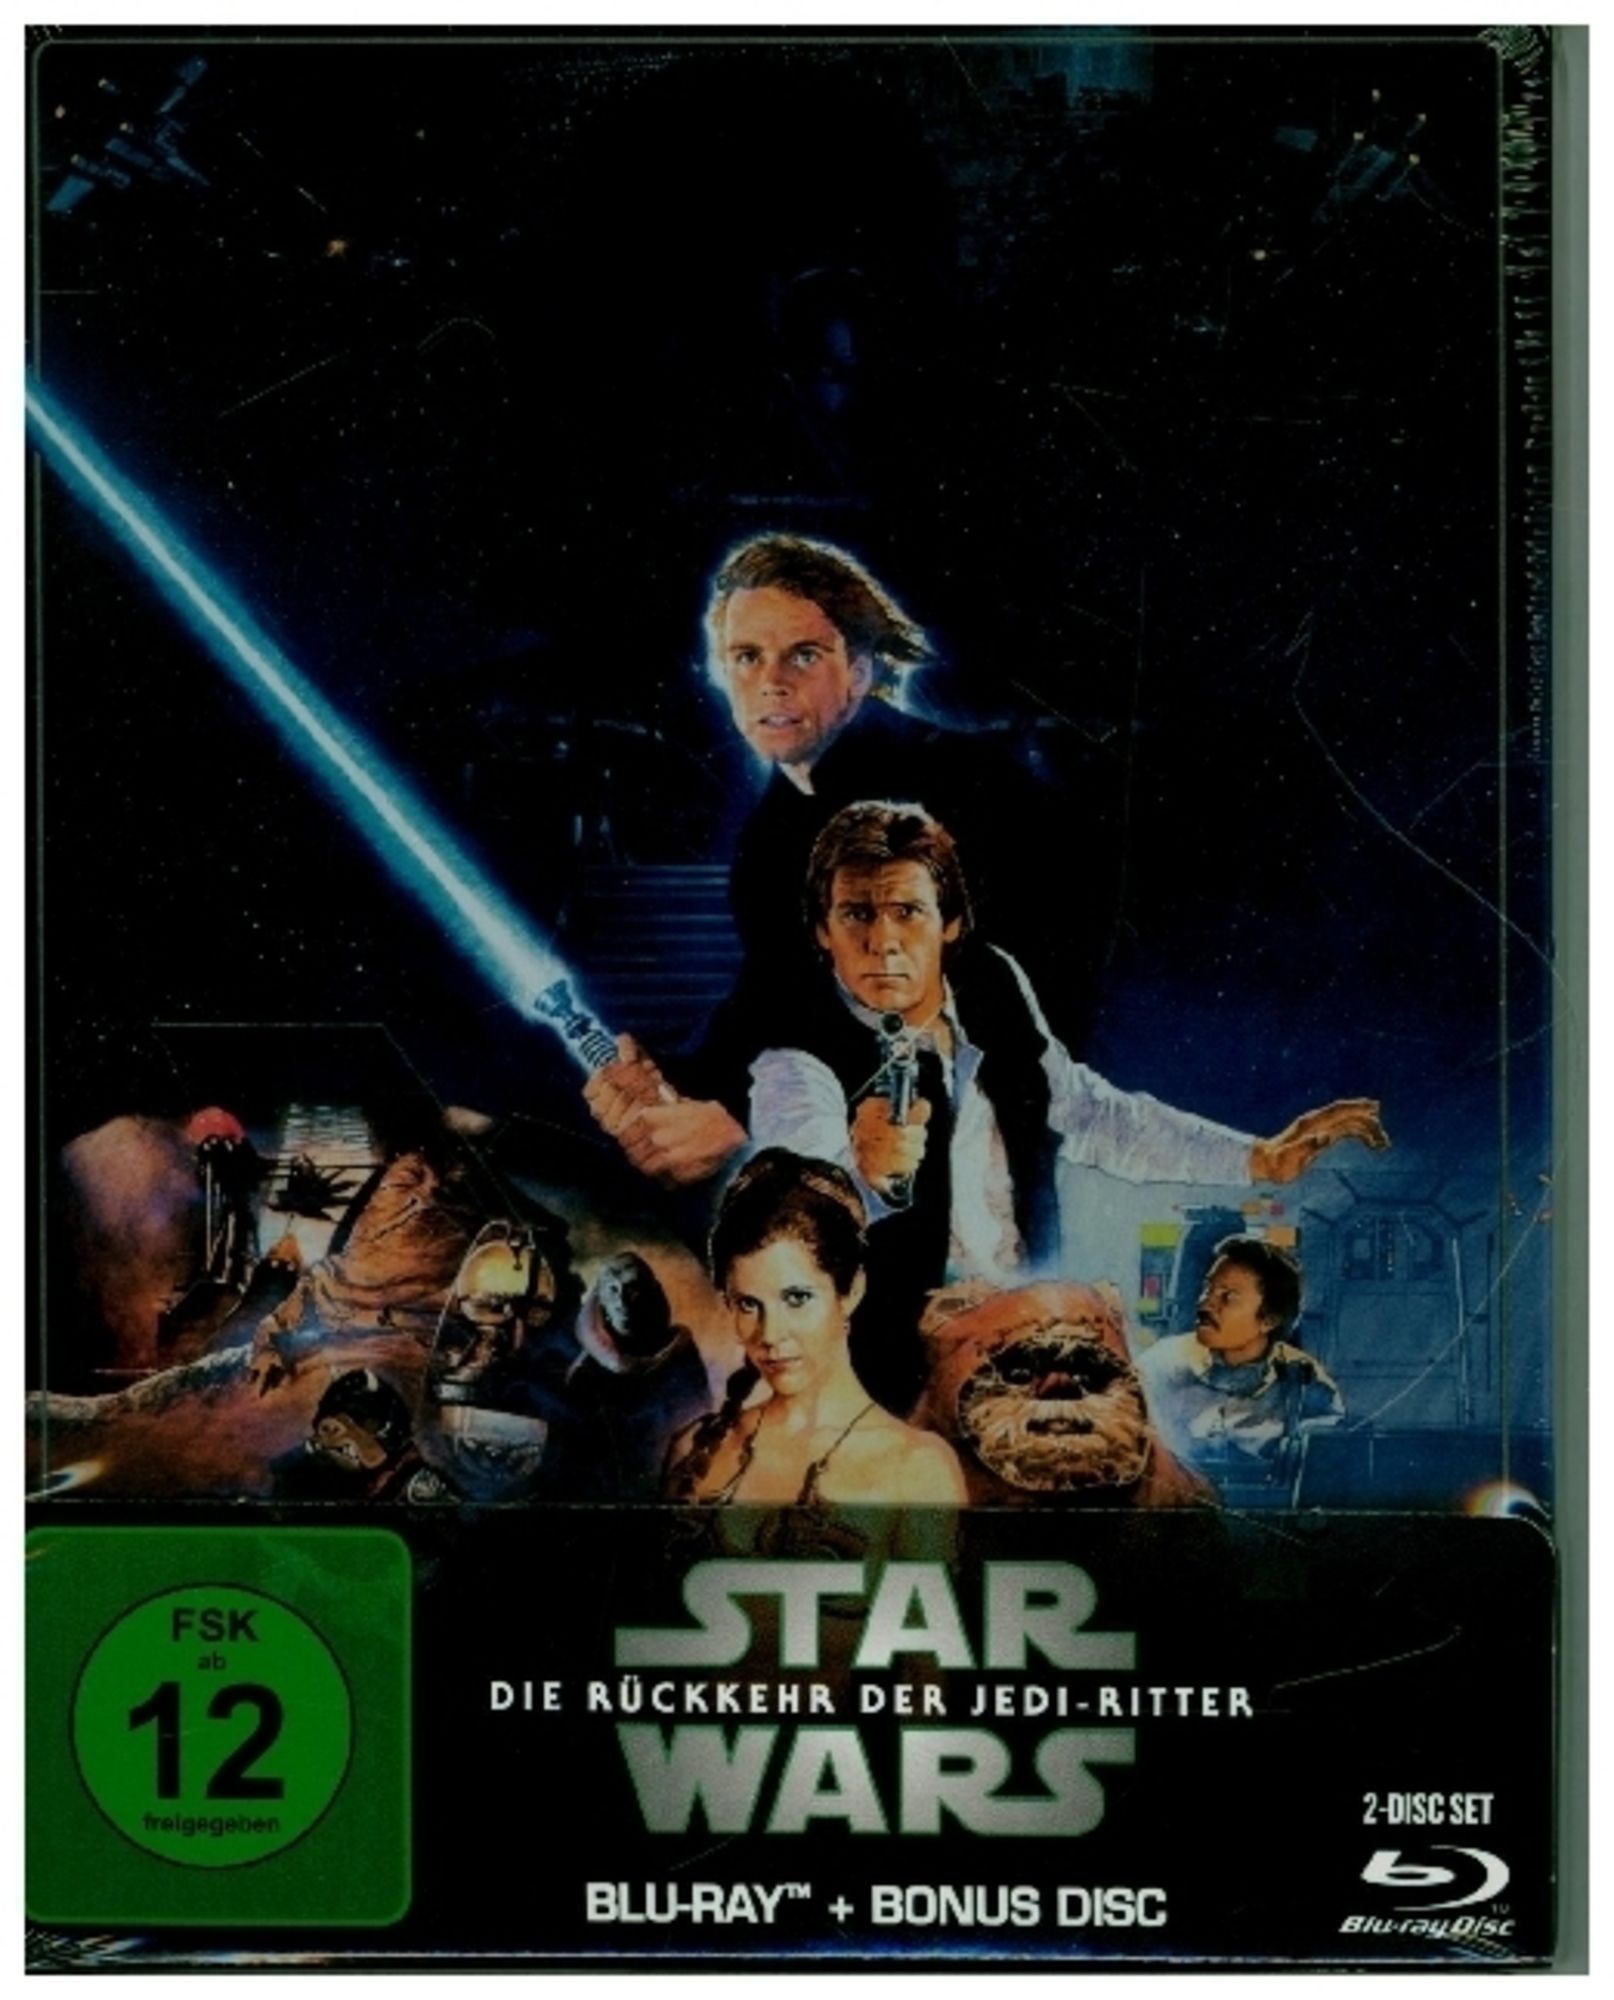 Star Wars: Episode VI - Die Rückkehr der Jedi-Ritter - Steelbook Edition ( Blu-ray)' von 'Richard Marquand' - 'Blu-ray